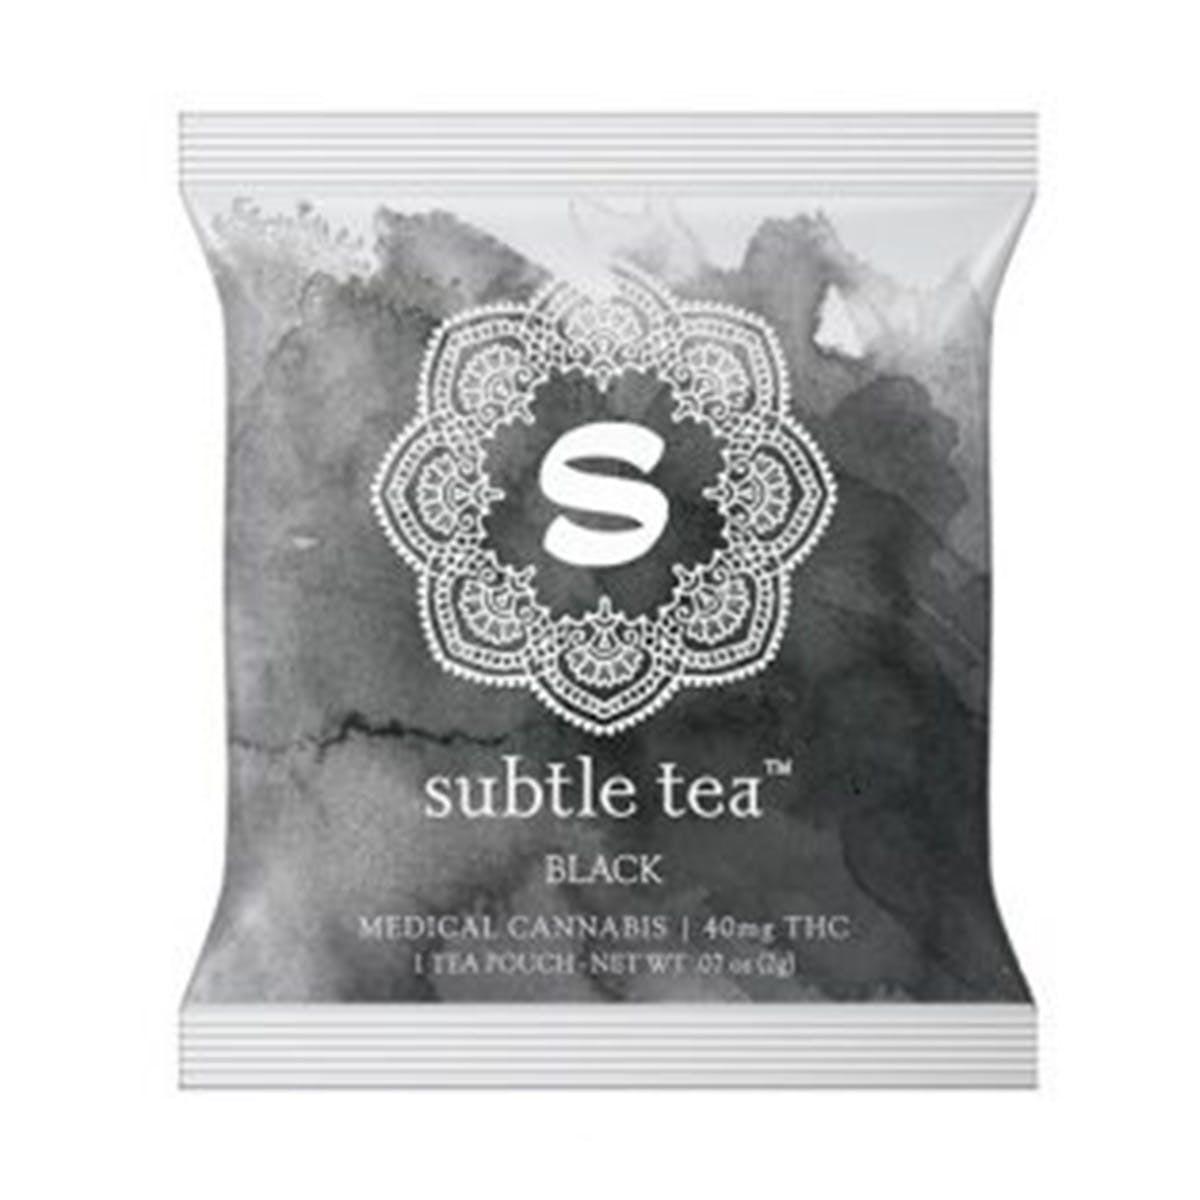 Subtle Tea Black - 40mg